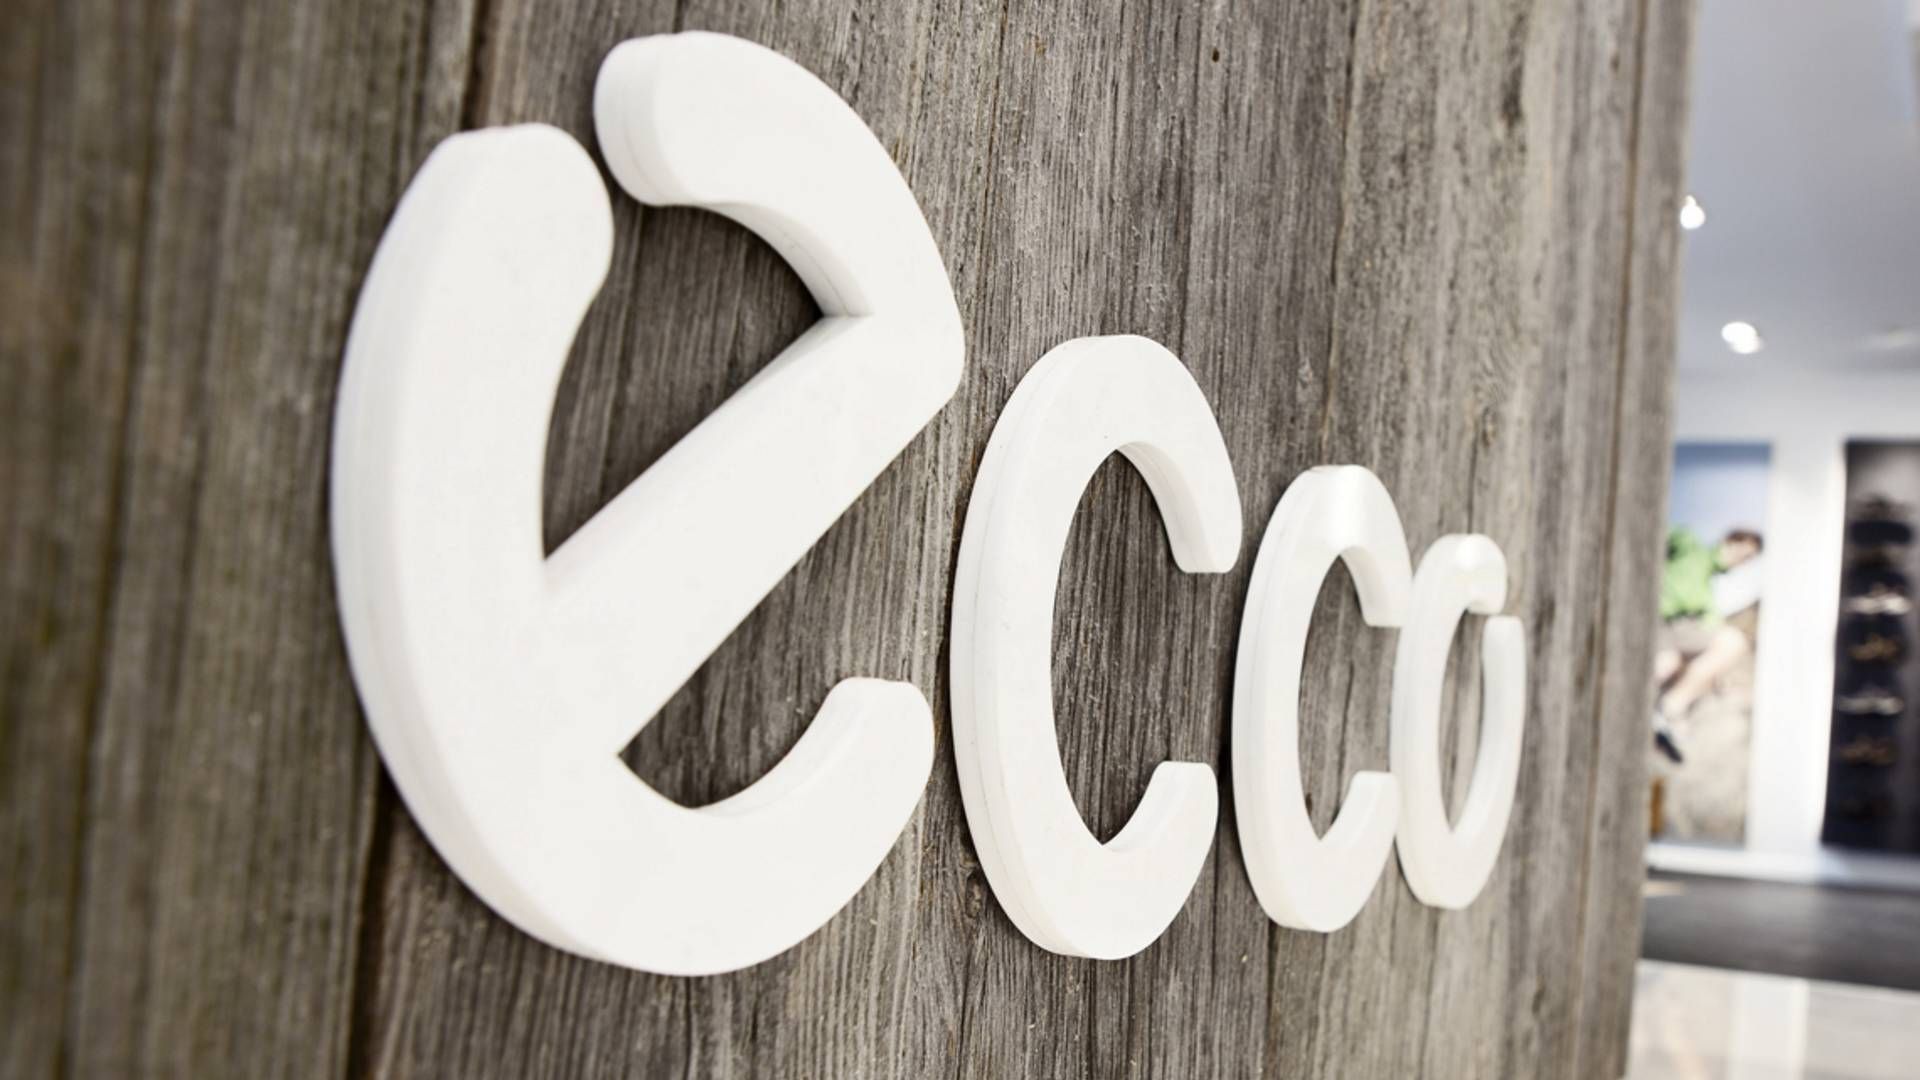 Ecco er færdig som leverandør til Salling stormagasiner. | Foto: PR / Ecco